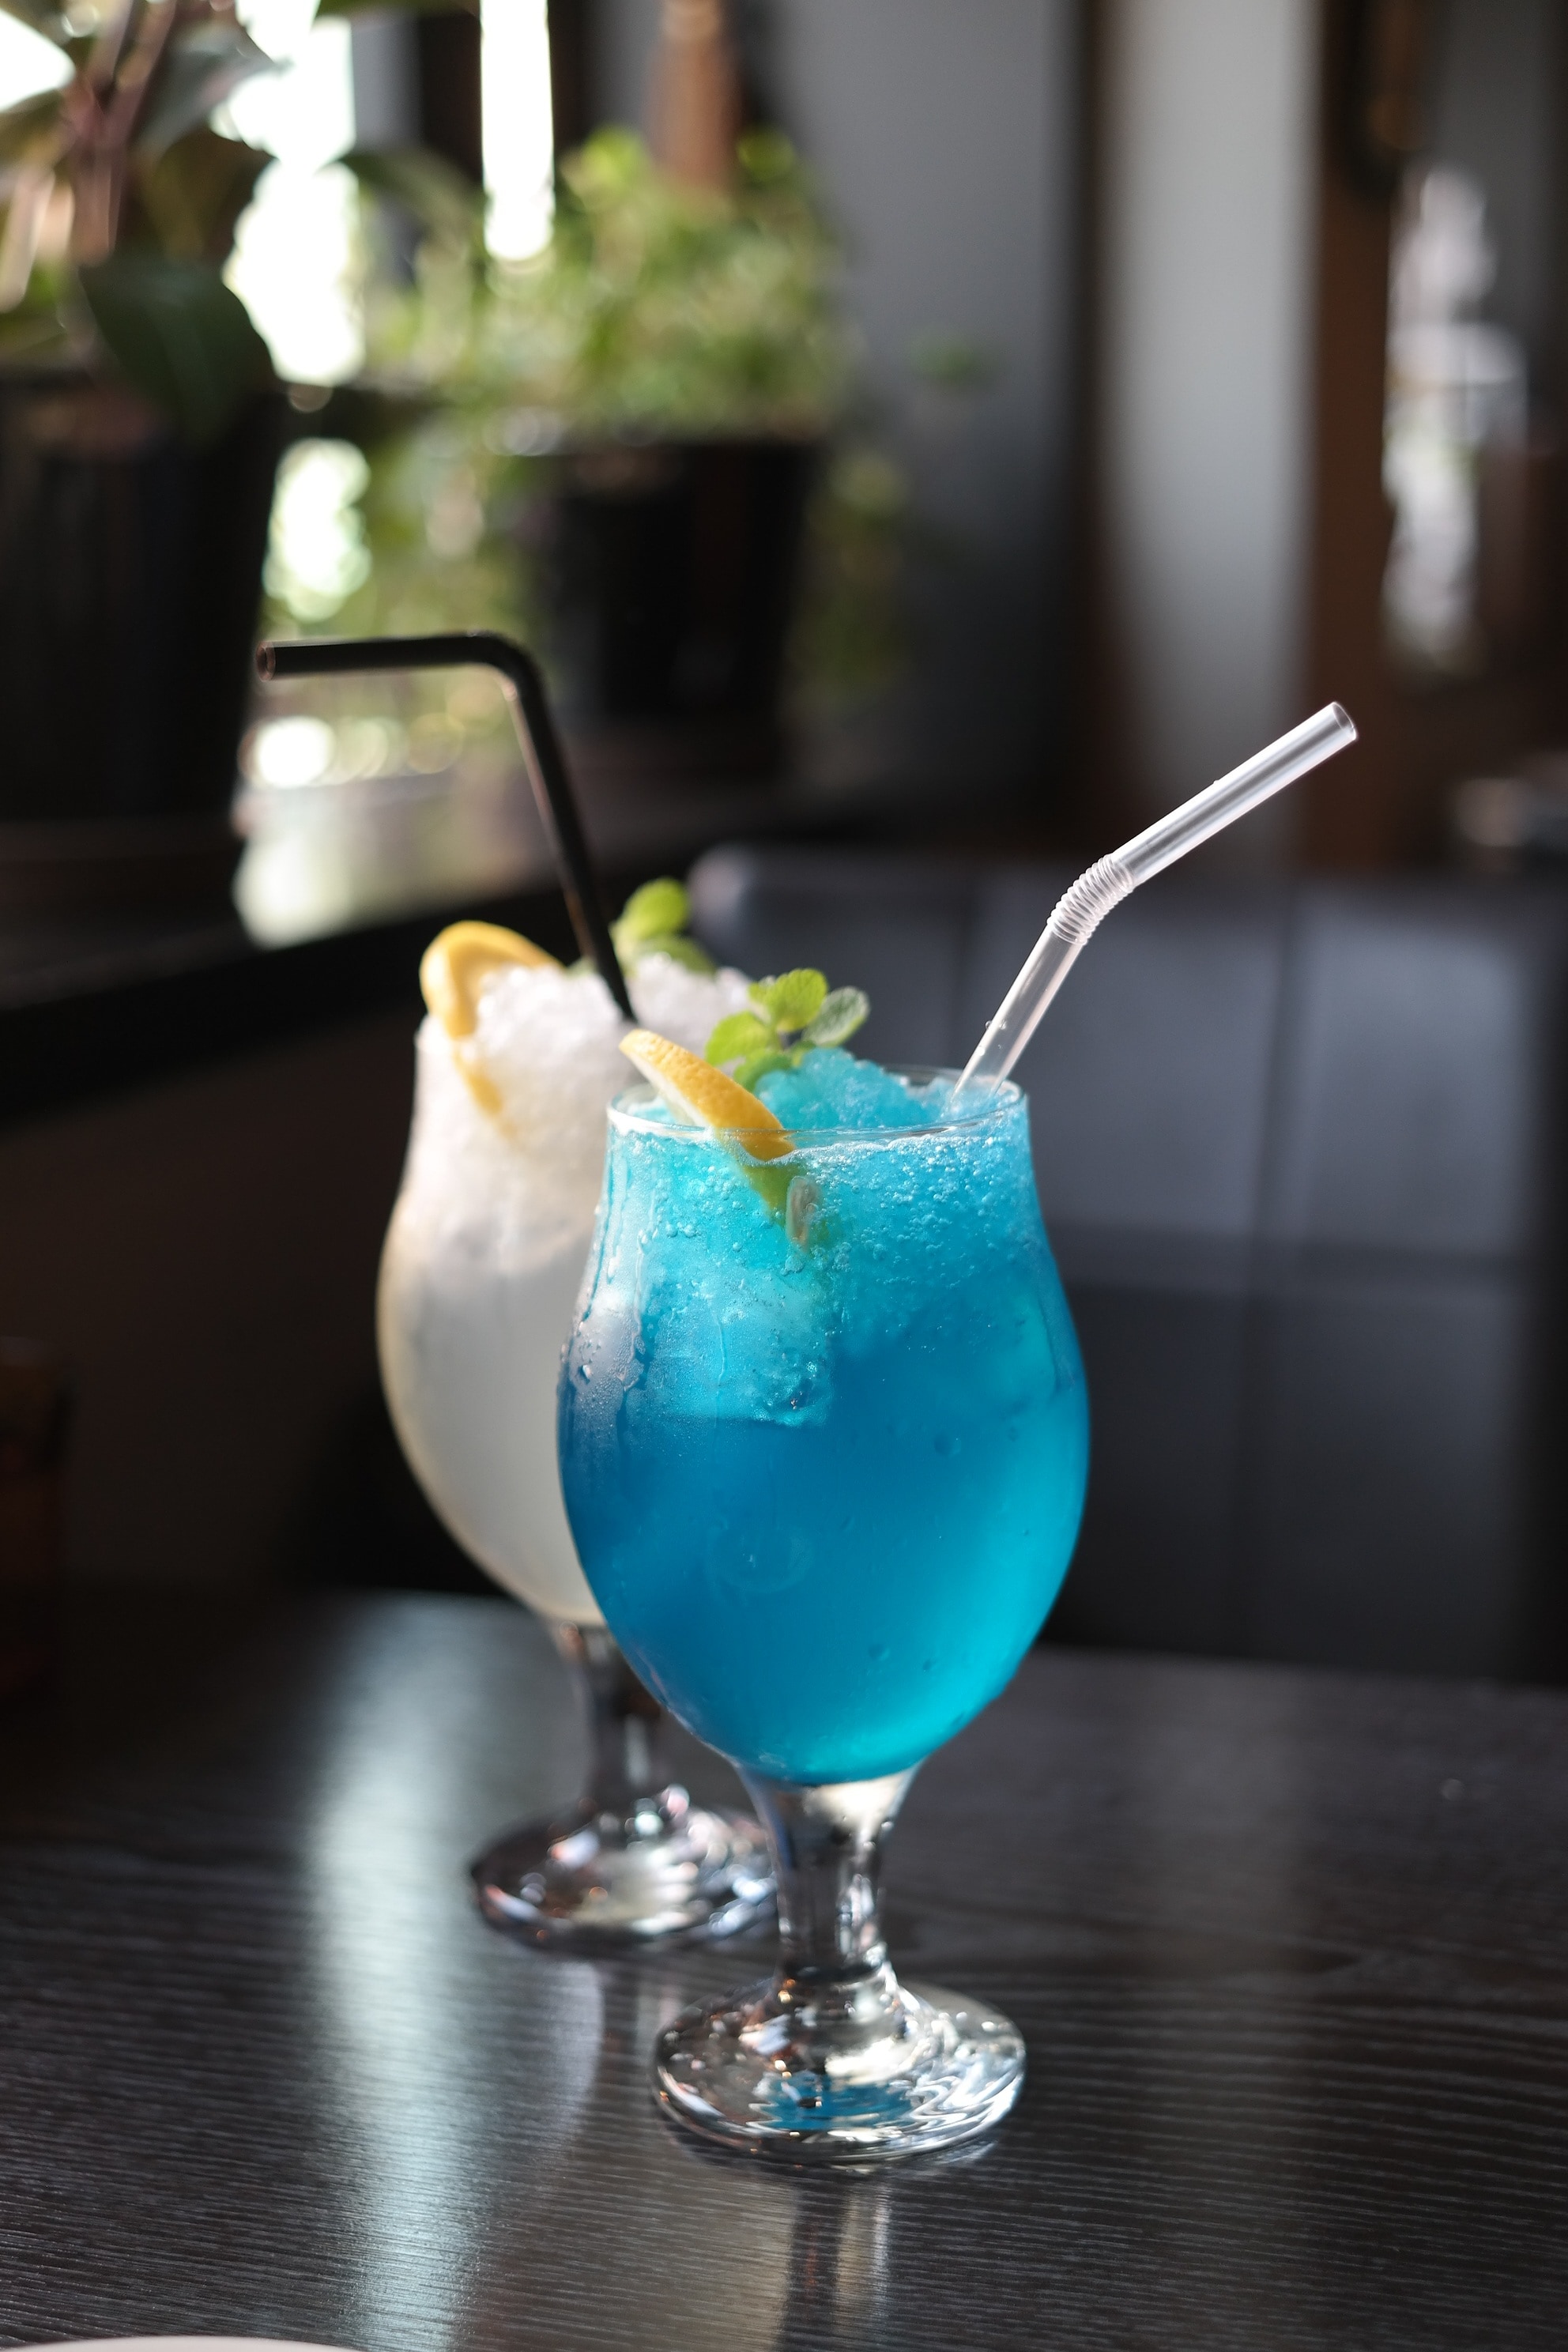 Lemon Ade, Blue Lemon Ade, Lemonade, Drinking Glass, - Blue Lemonade , HD Wallpaper & Backgrounds